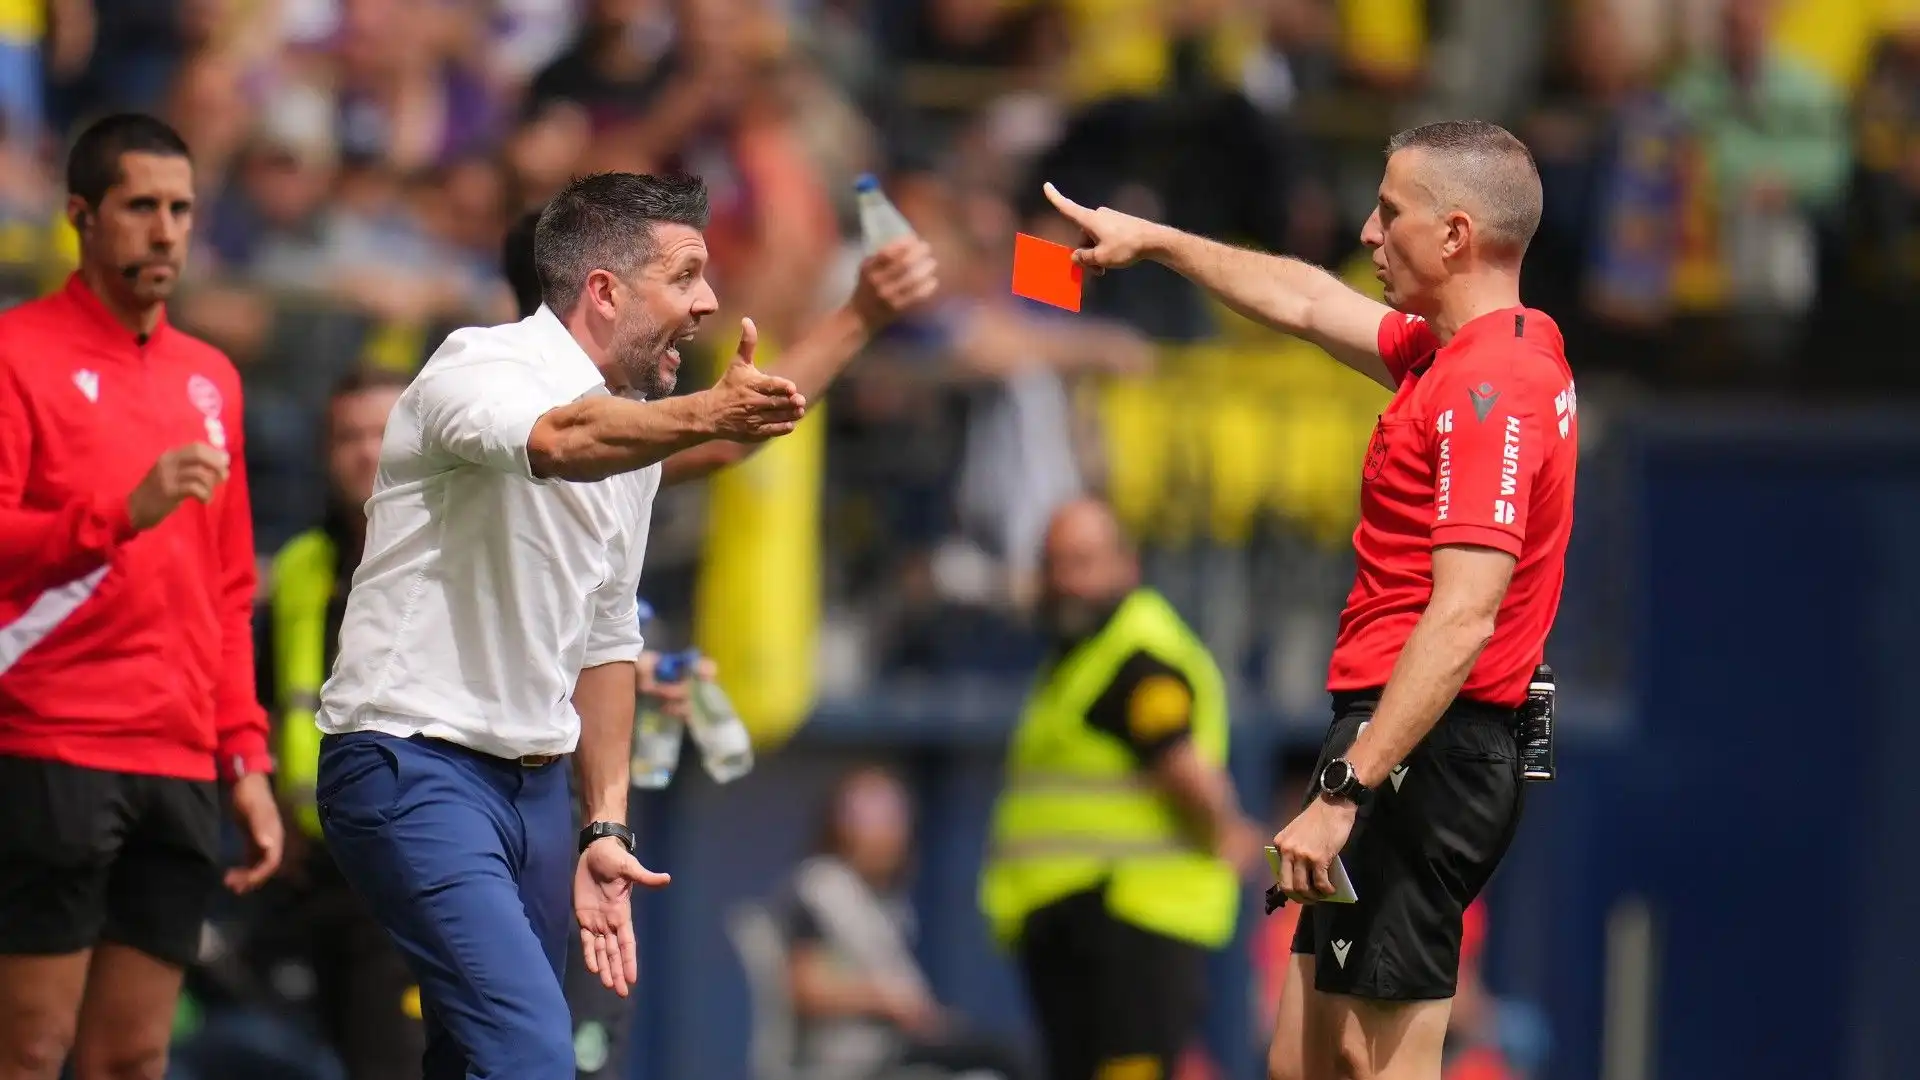 L'allenatore ha detto qualche parola poco carina dopo il gol del Villarreal, l'arbitro l'ha sentito e l'ha espulso